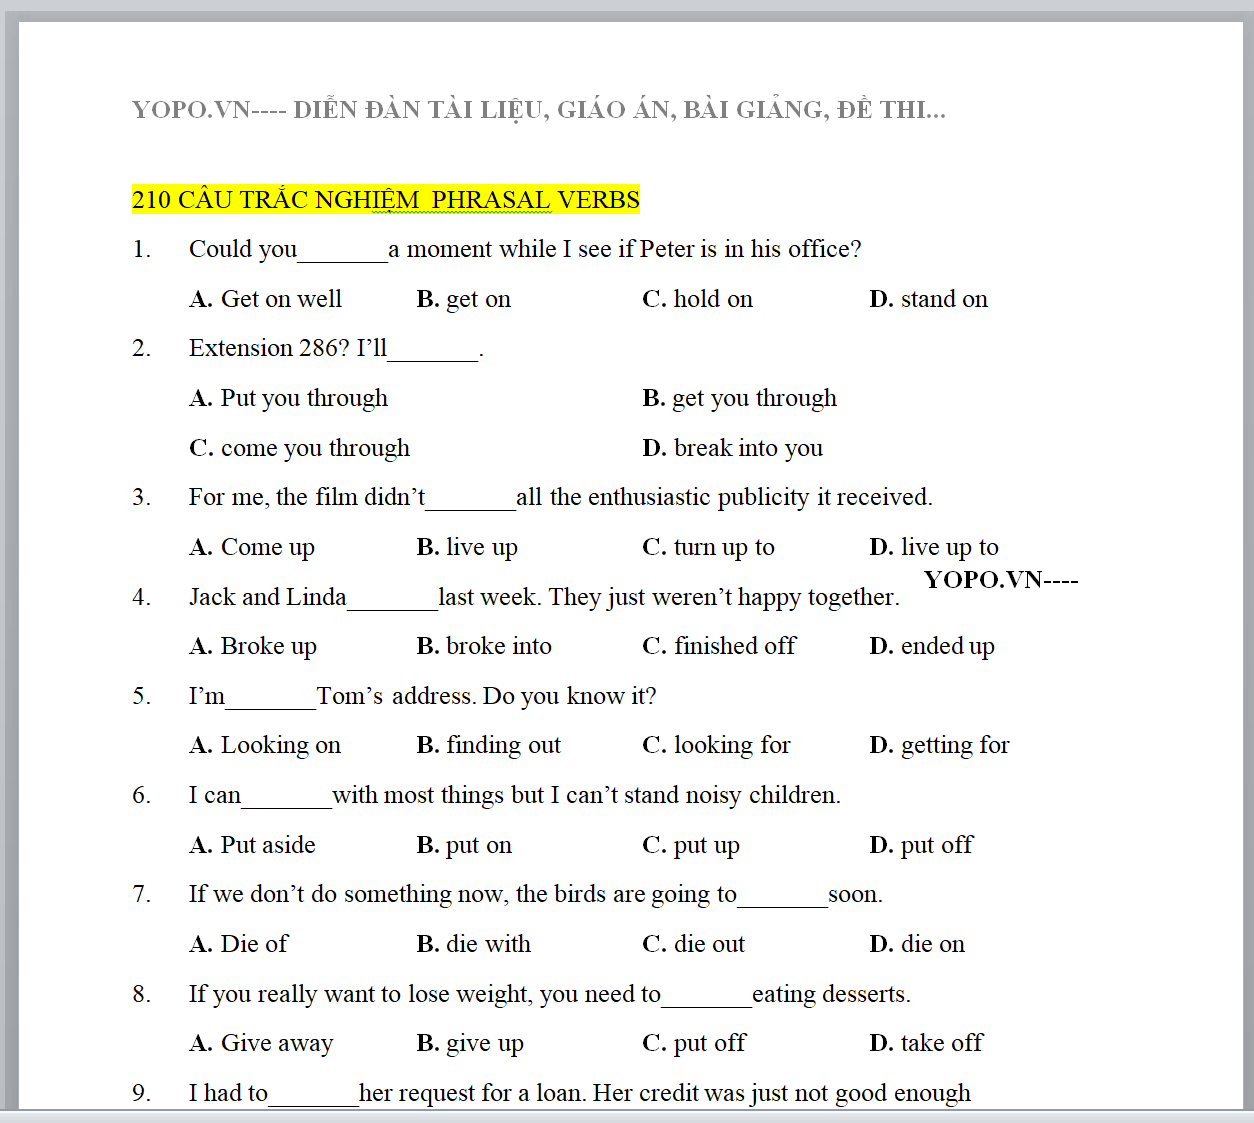 BỘ TÀI LIỆU 210 câu trắc nghiệm phrasal verb, bài tập trắc nghiệm phrasal verbs có đáp án UPDATE